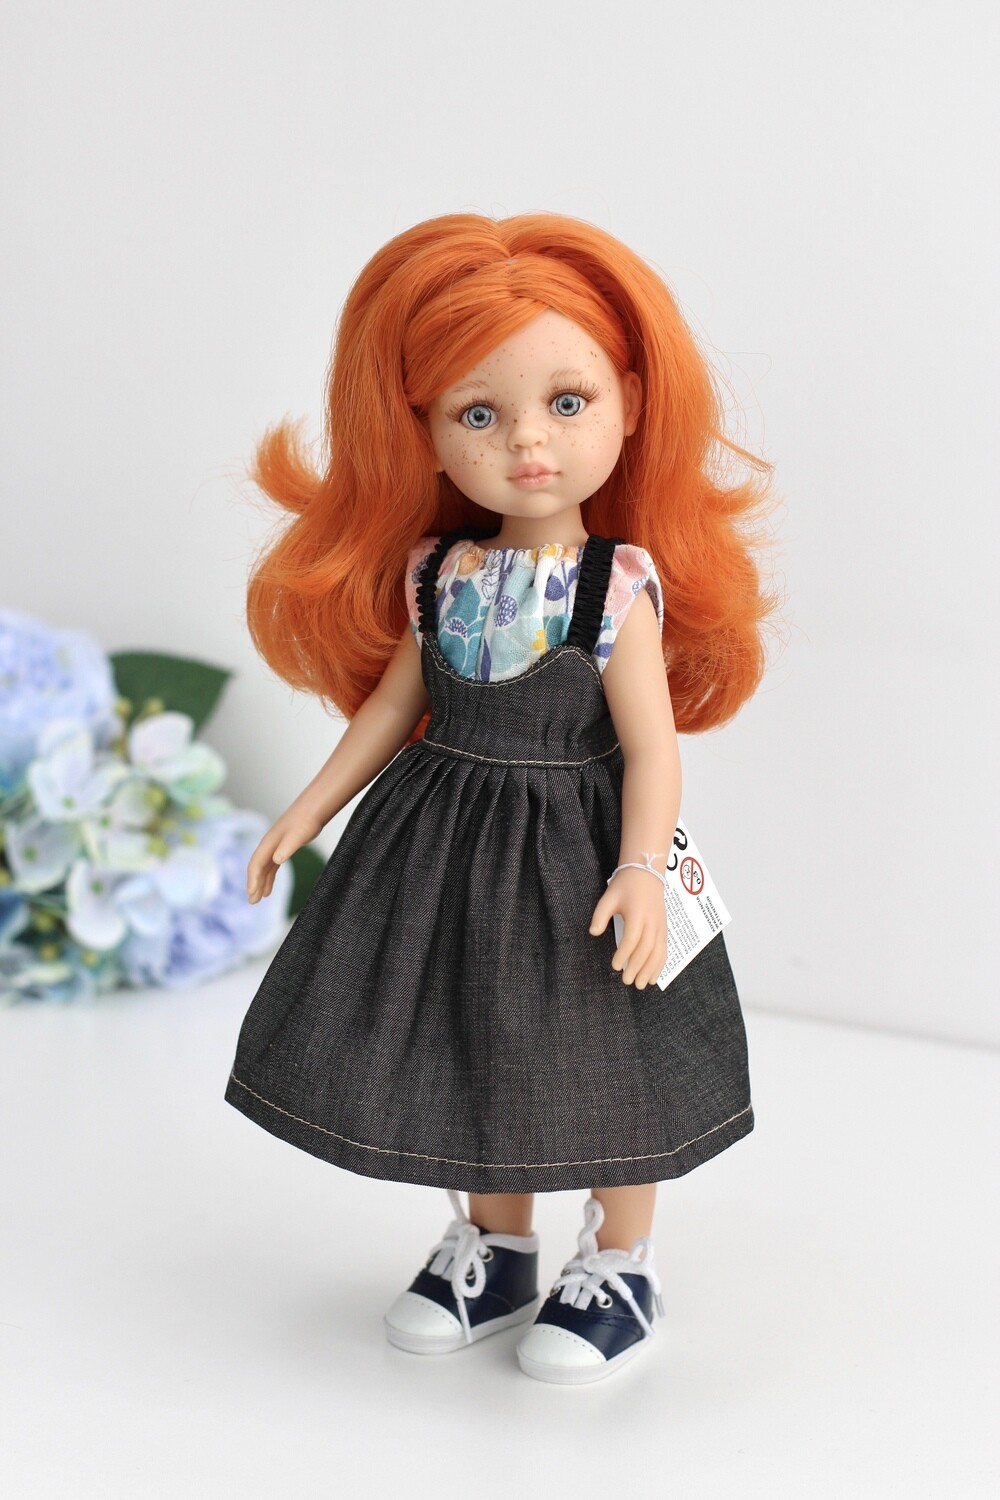 Кукла Марибель, Paola Reina Паола Рейна (в фабричном наряде), 34 см